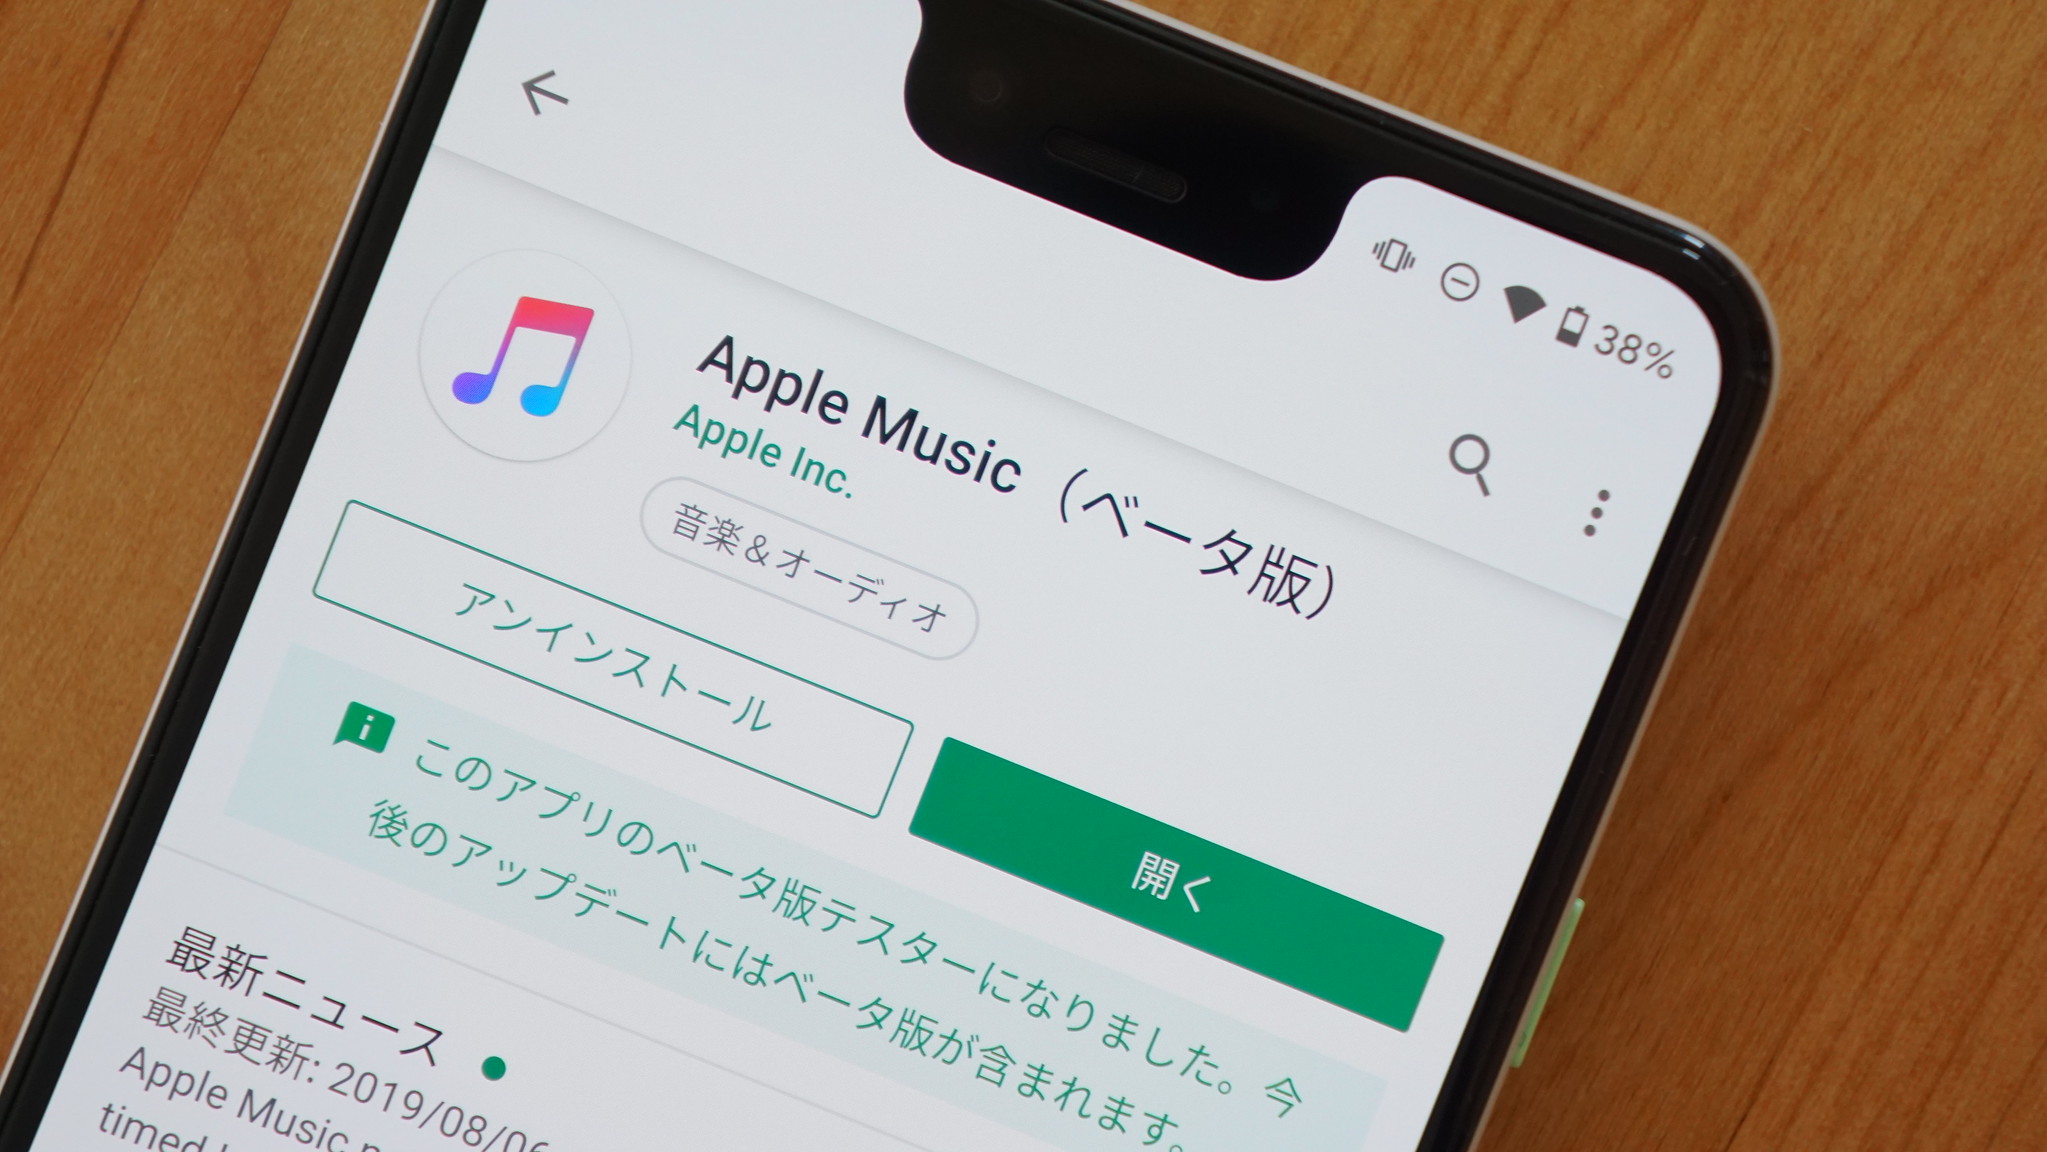 Android向け「Apple Music」、ベータ版でダークテーマと歌詞の同期表示に対応